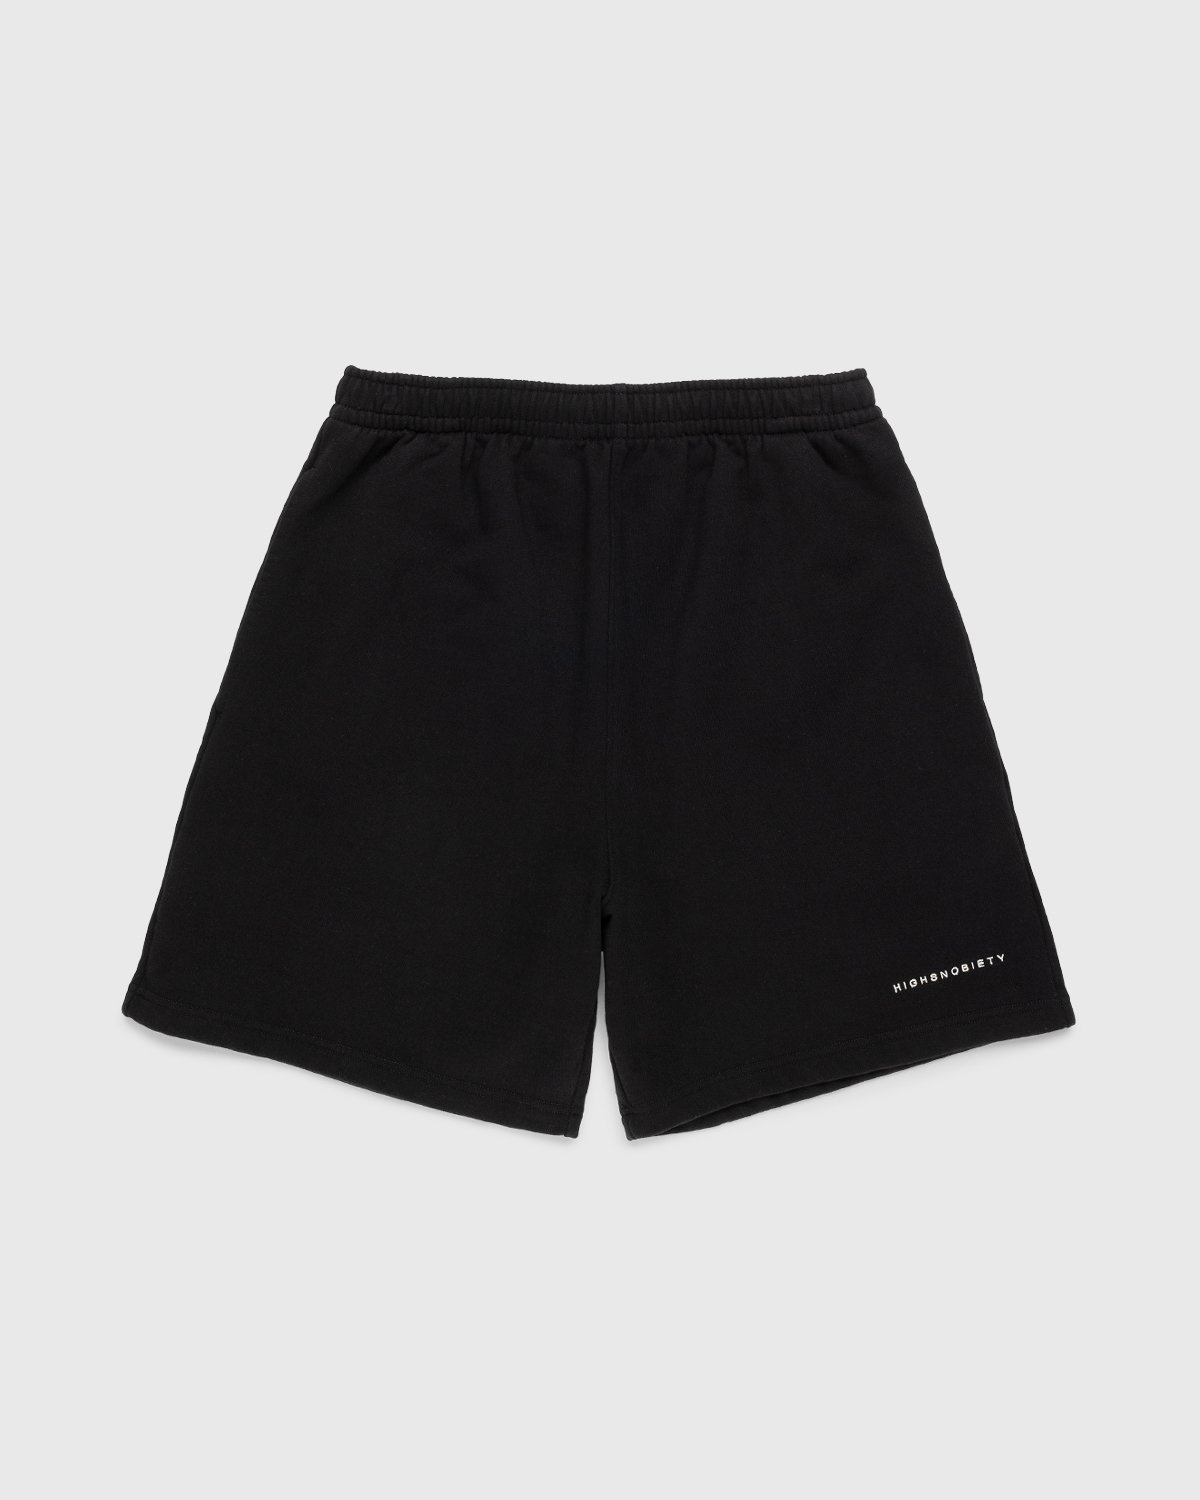 Highsnobiety – Staples Shorts Black - Shorts - Black - Image 1